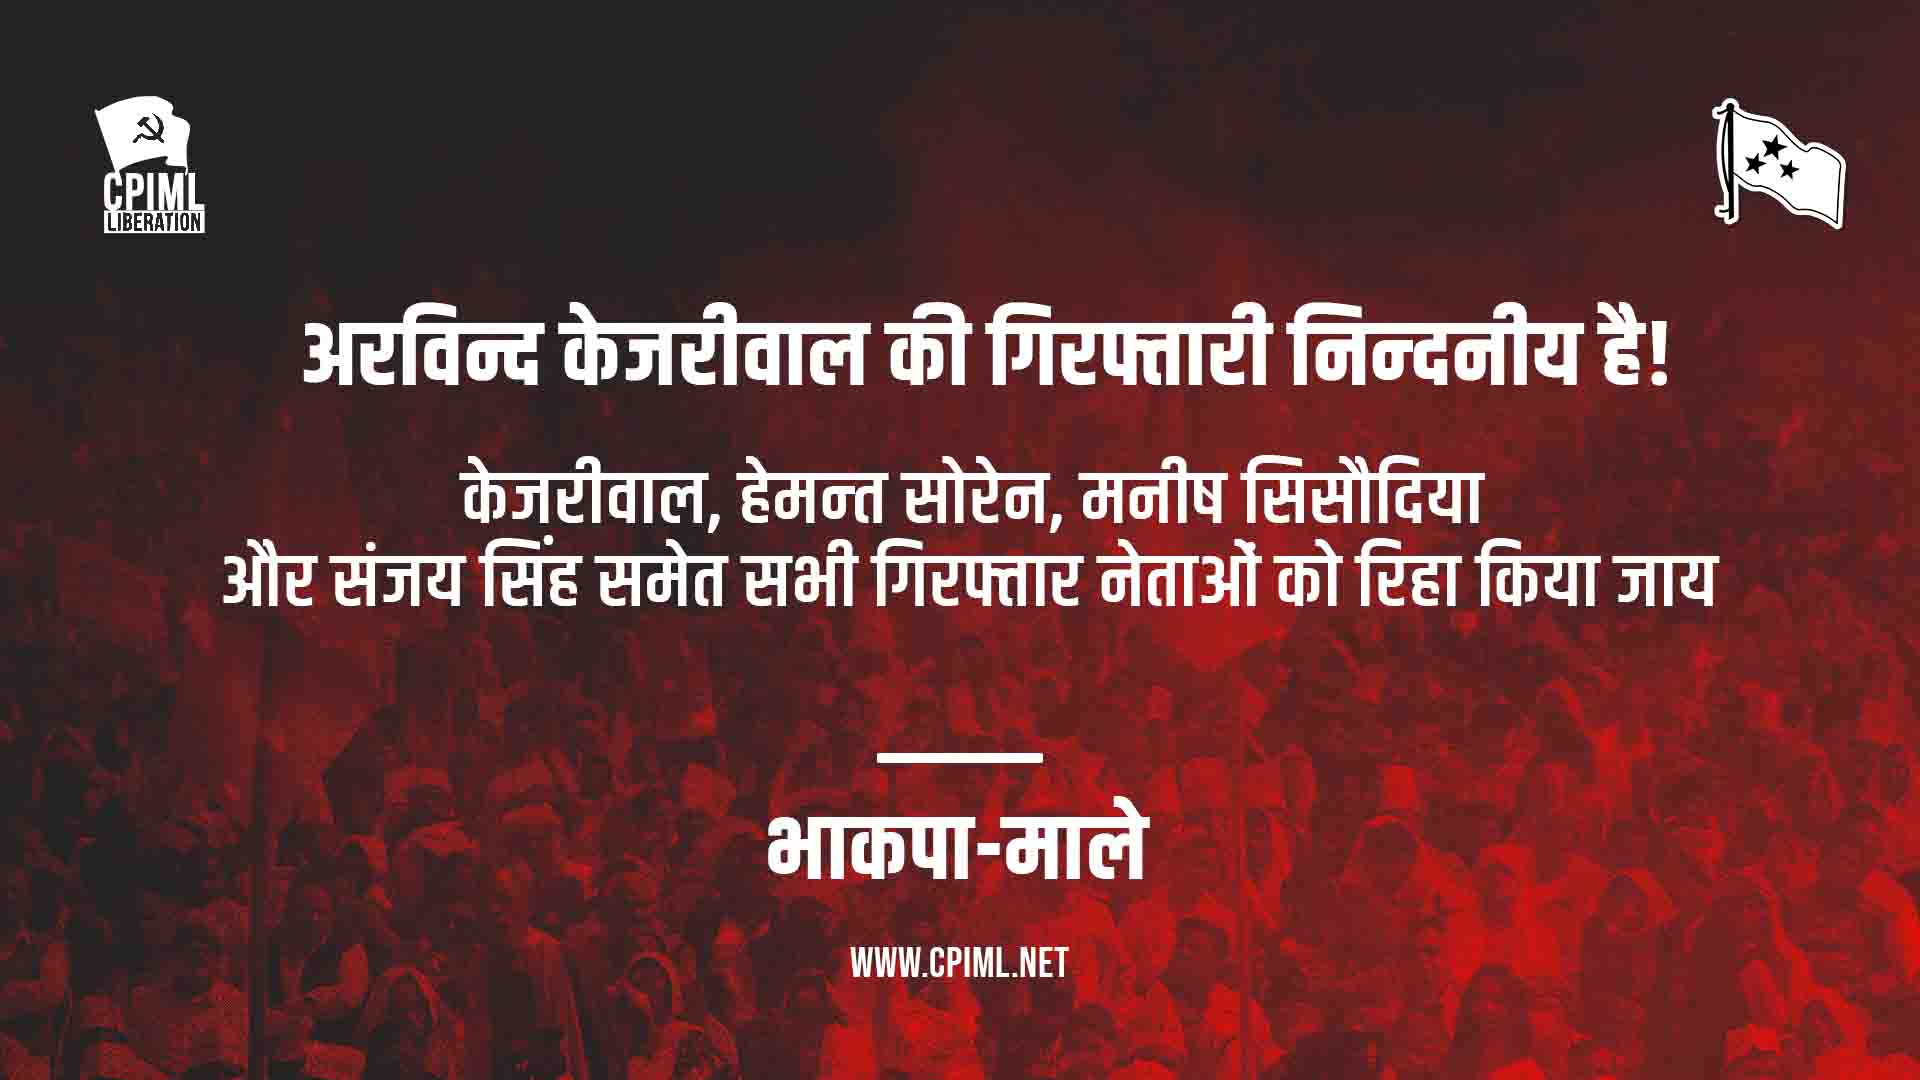 Arrest of DELHI CM Kejriwal_CPIML statement